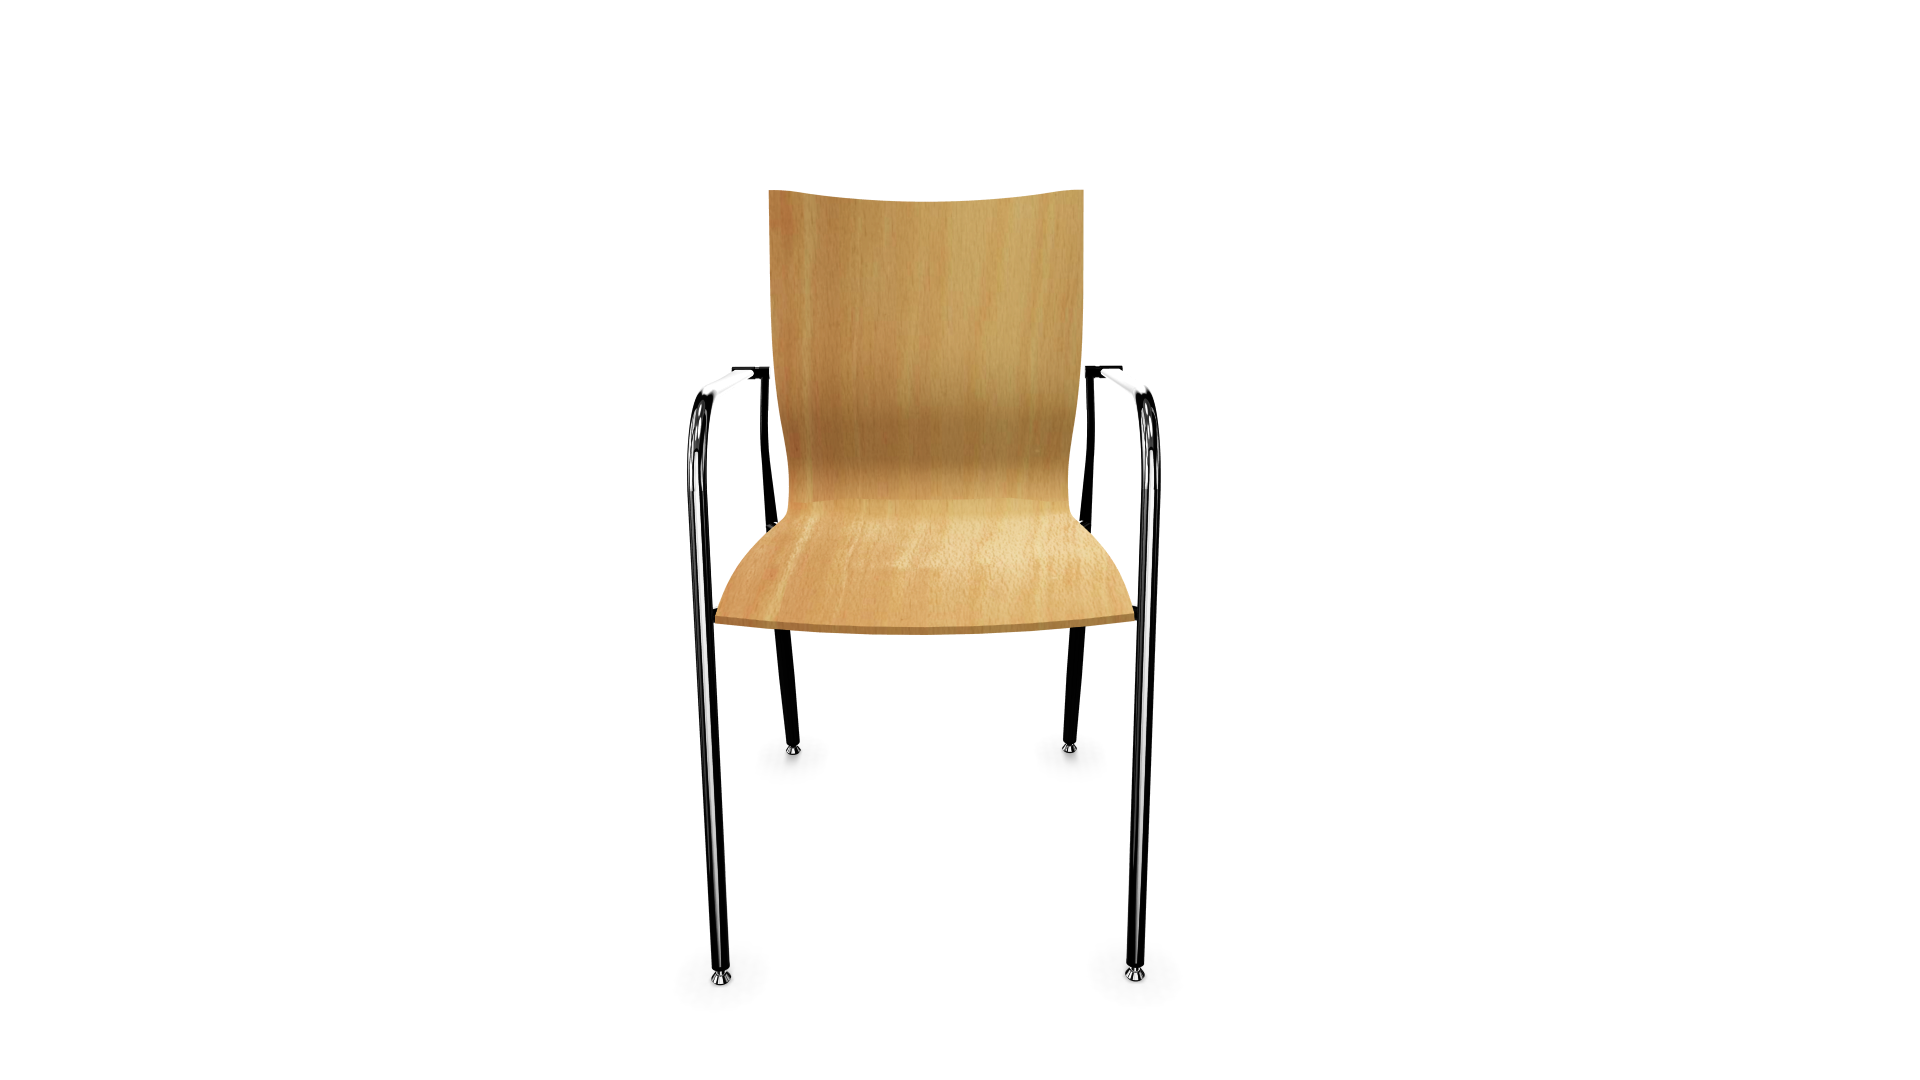  Ikara Chair Home, Office, Garden online marketplace